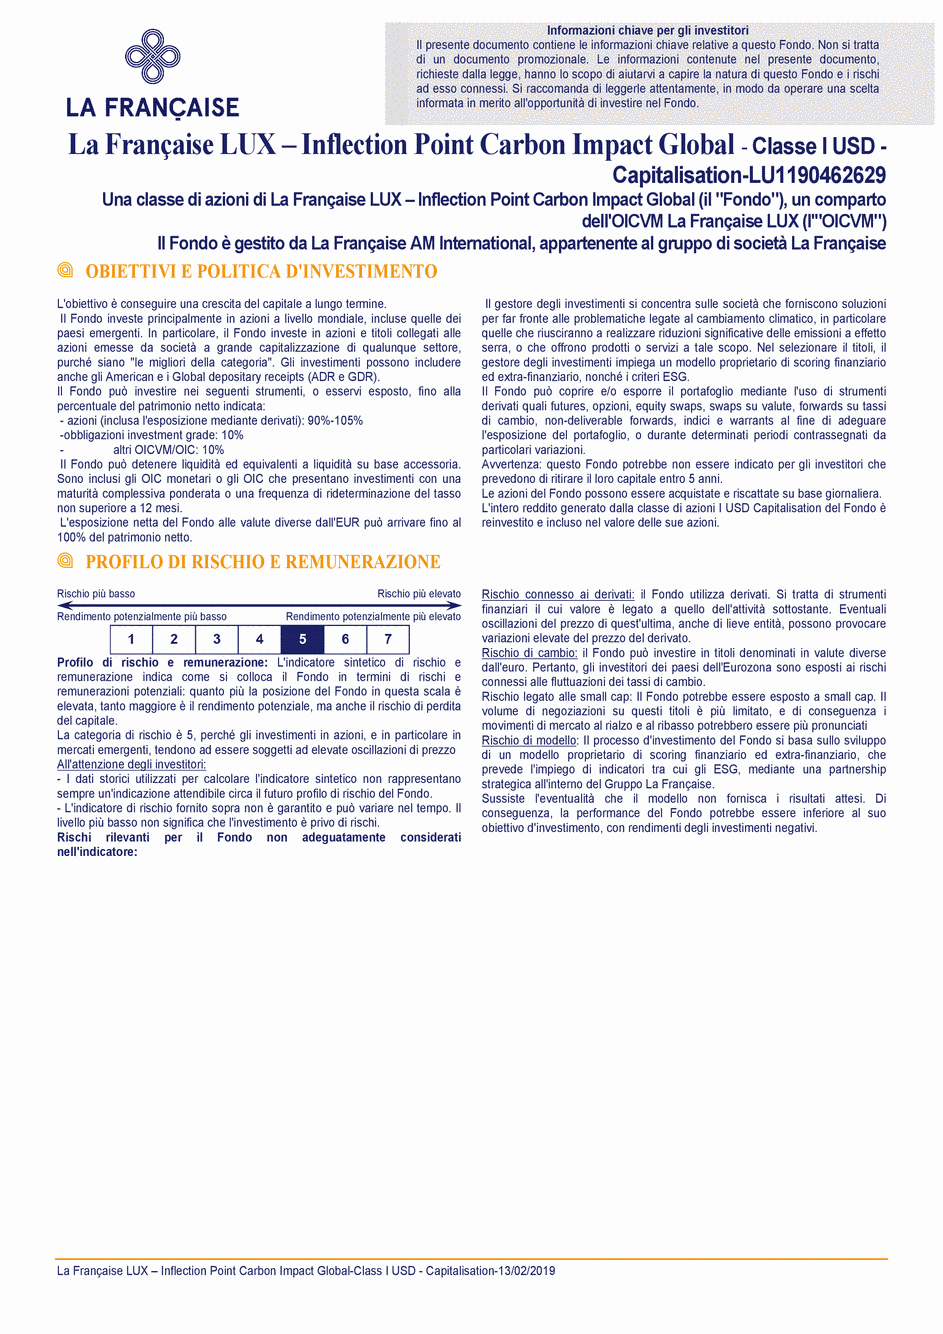 DICI La Française LUX - Inflection Point Carbon Impact Global - Class I USD - 13/02/2019 - Italien